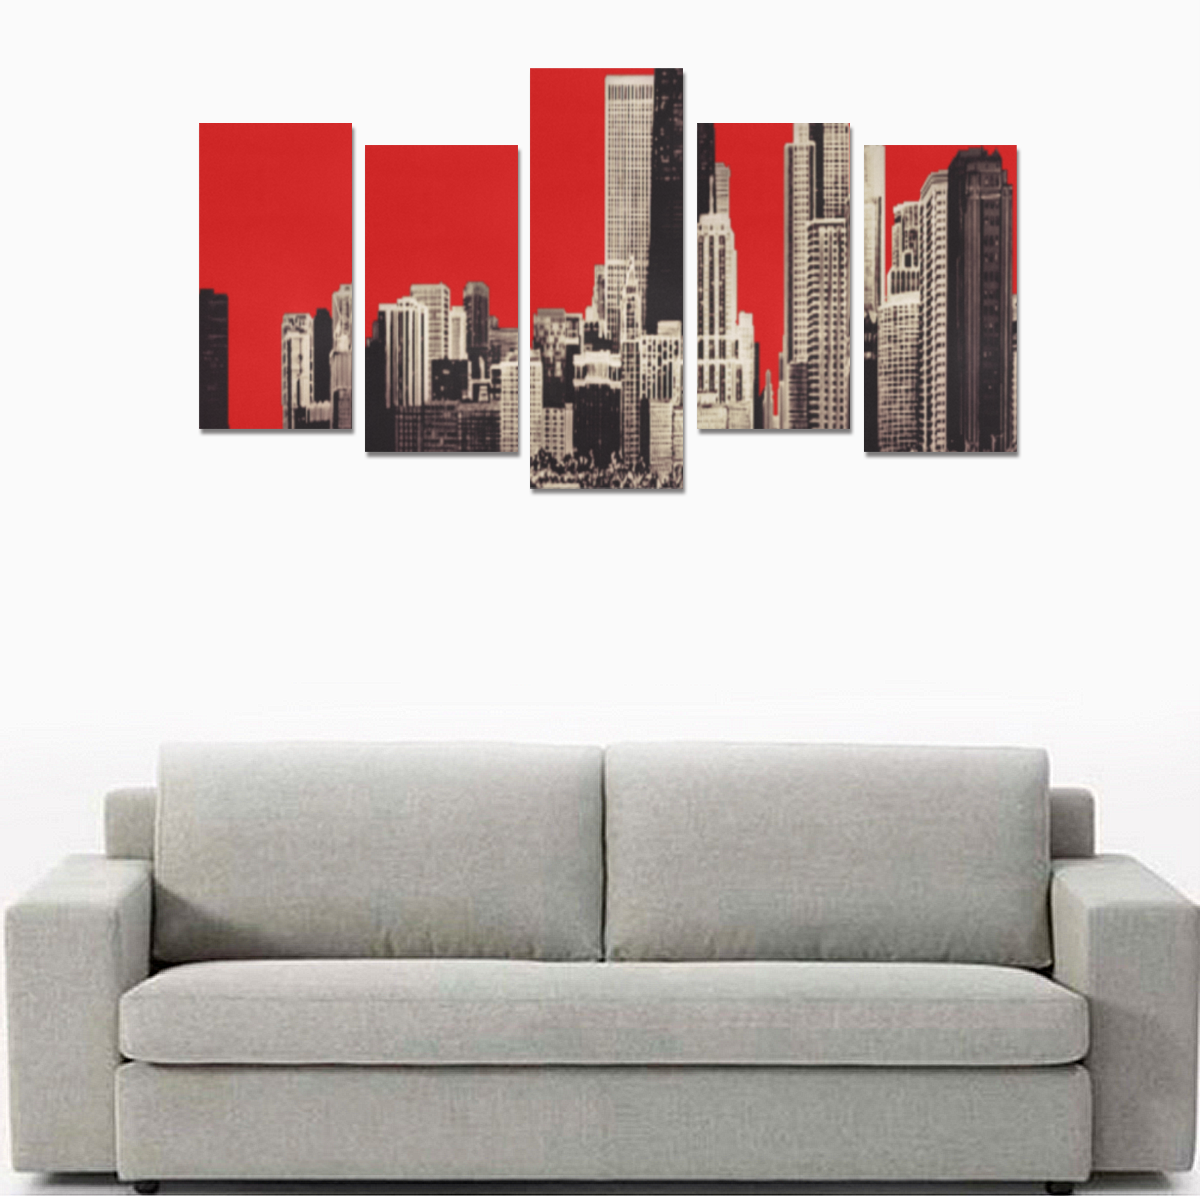 Chicago Skyline Canvas Print Sets E (No Frame)